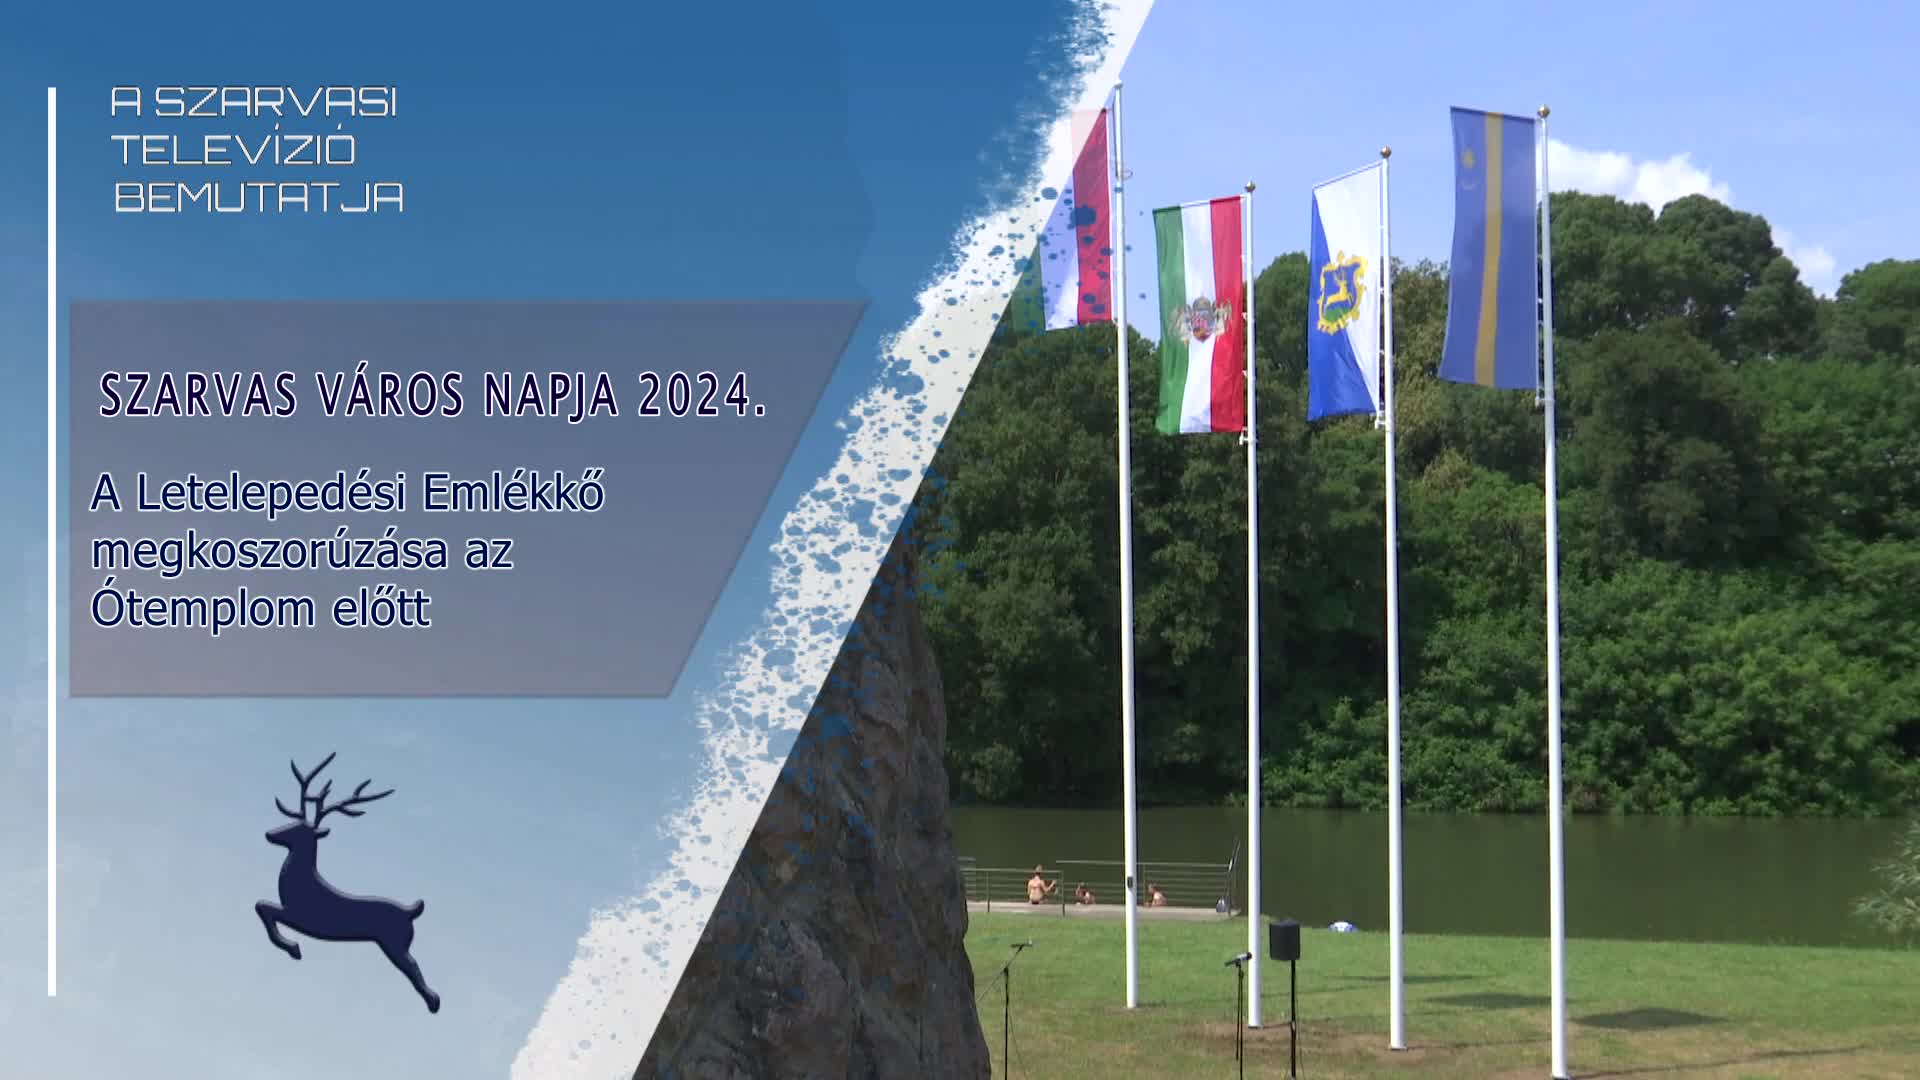 SZARVAS VÁROS NAPJA 2024 - A Letelepedési Emlékkő megkoszorúzása az Ótemplom előtt 